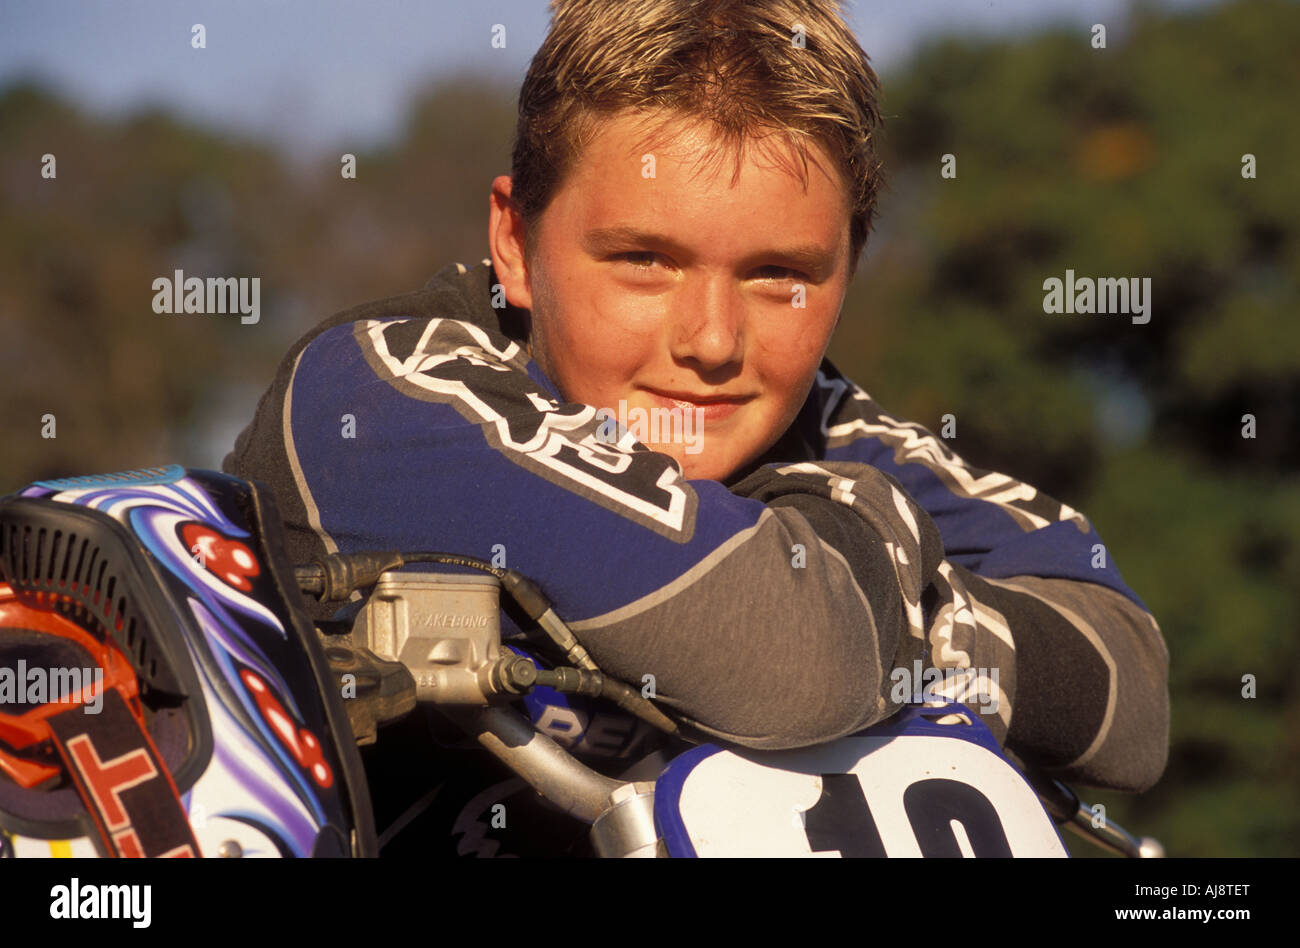 Junge Motor-Cross Racer mit seinem Motorrad. Stockfoto